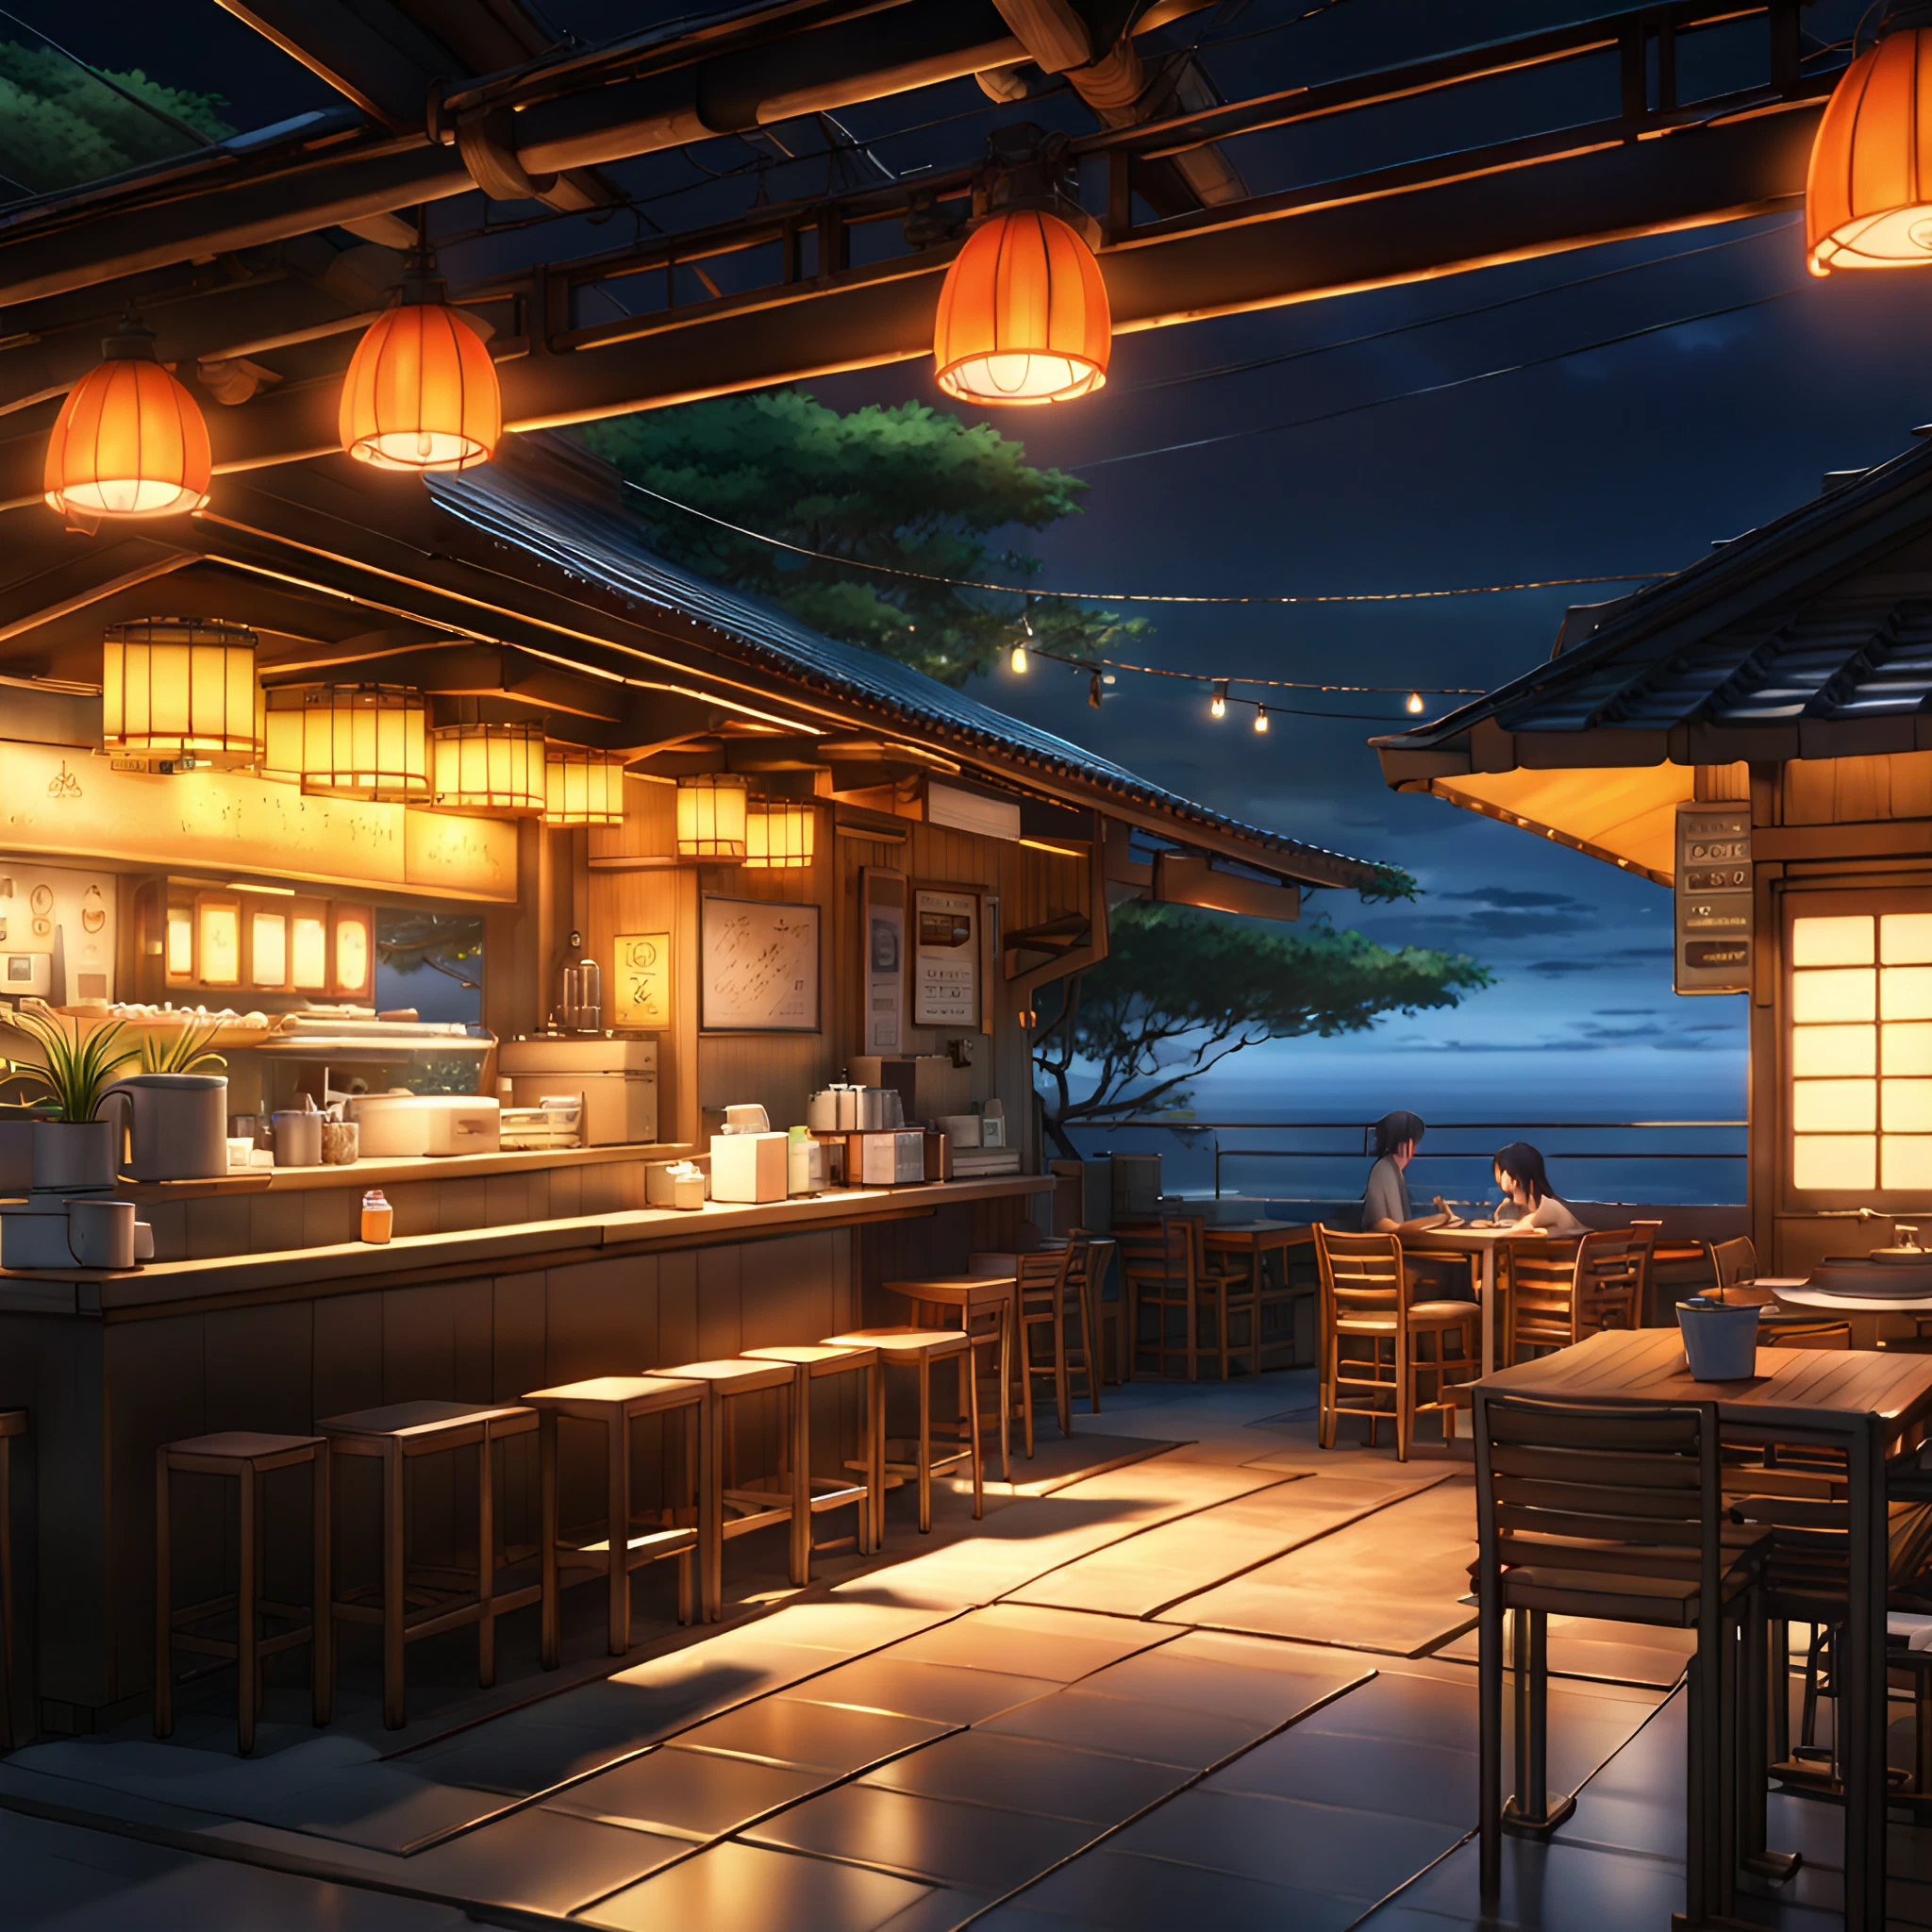 美しい日本の屋台の店内＆提灯の明かりと綺麗な夜空の無料壁紙画像